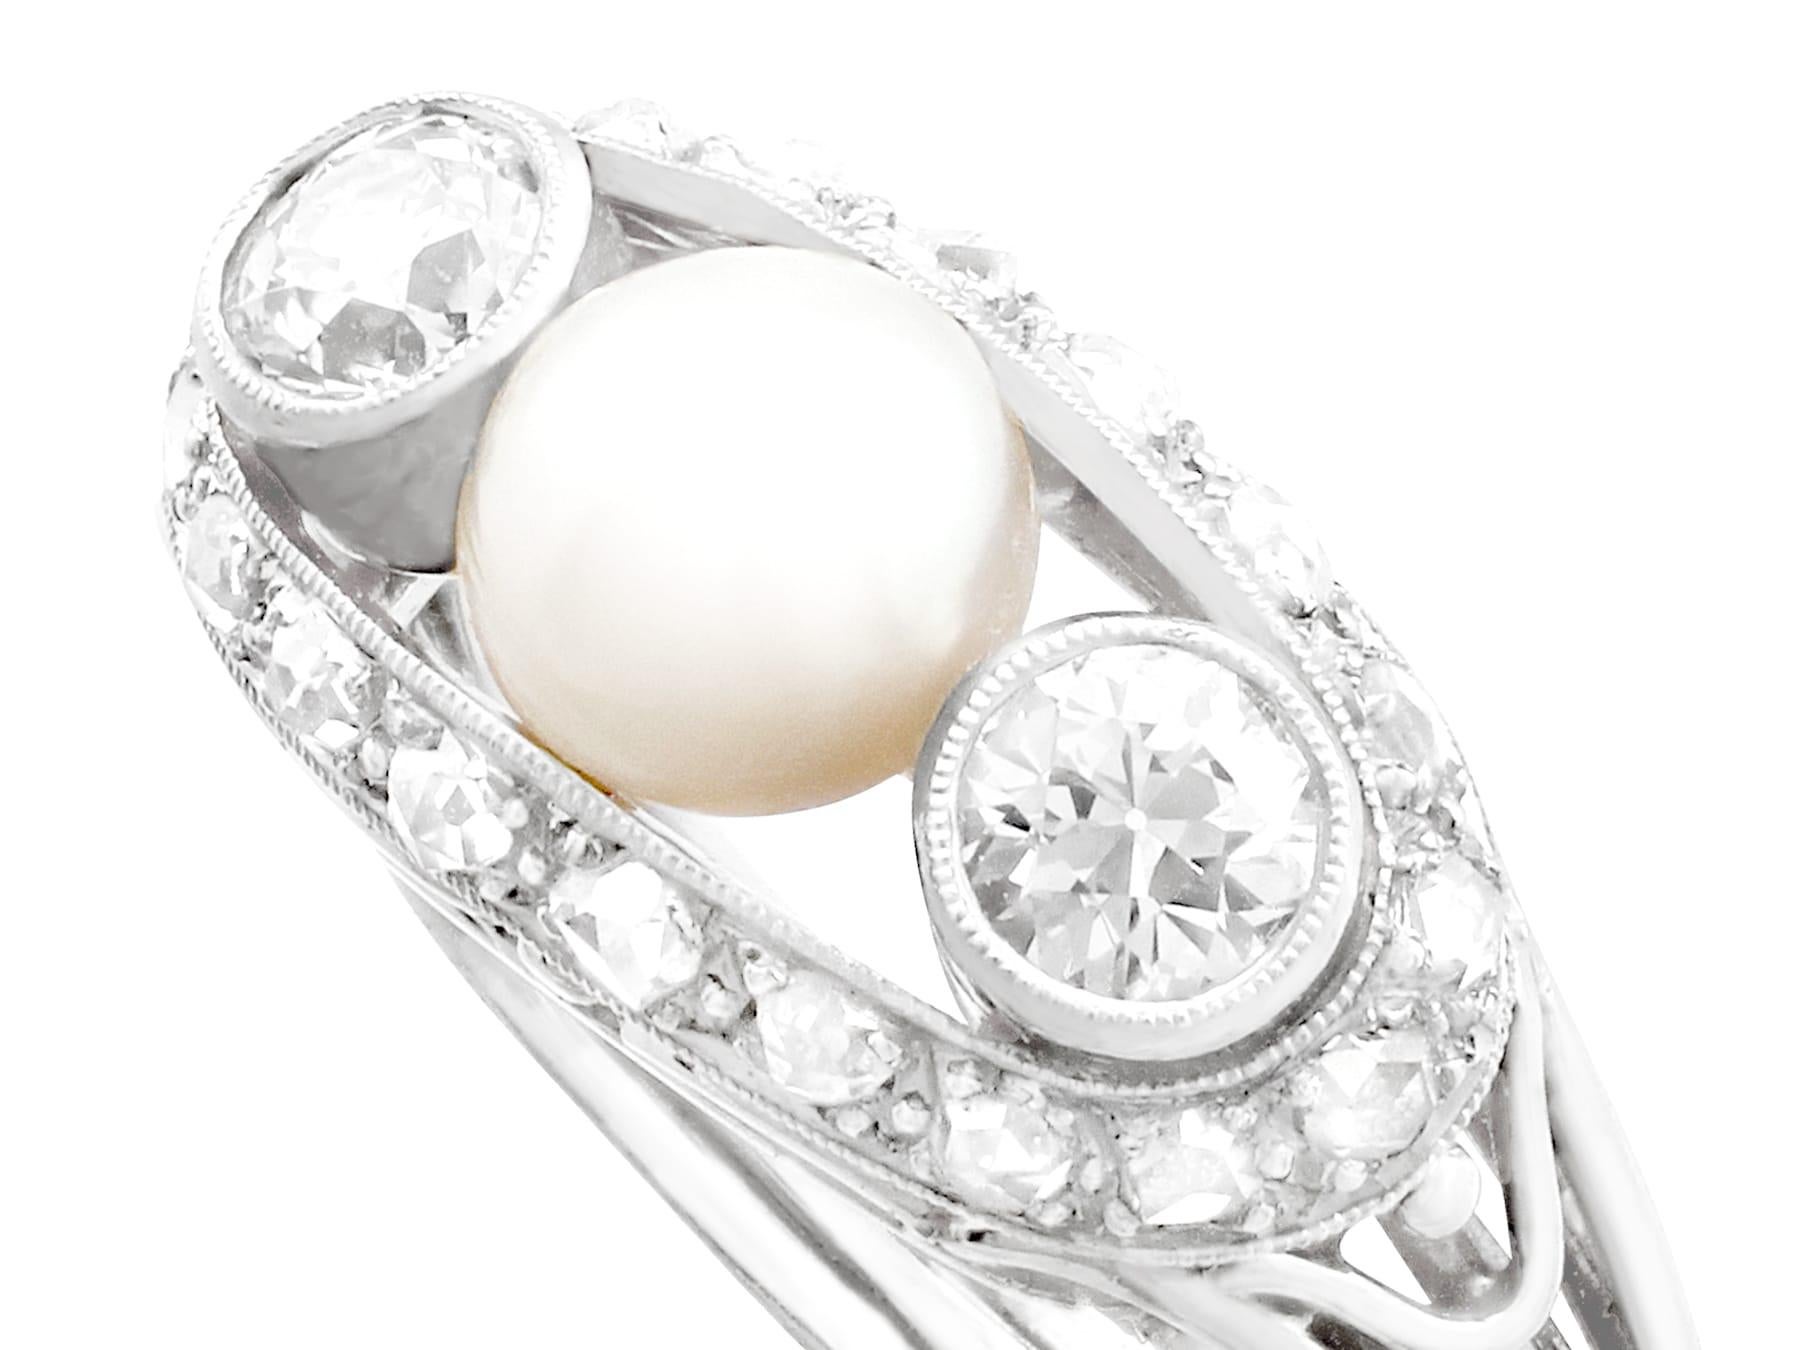 Eine atemberaubende, feine und beeindruckende antike Perle und 0,78 Karat Diamant, 14 Karat Weißgold Cocktail-Ring; Teil unserer antiken Schmuck und Estate Jewelry Collections.

Dieser atemberaubende Ring mit antiken Perlen und Diamanten ist aus 14